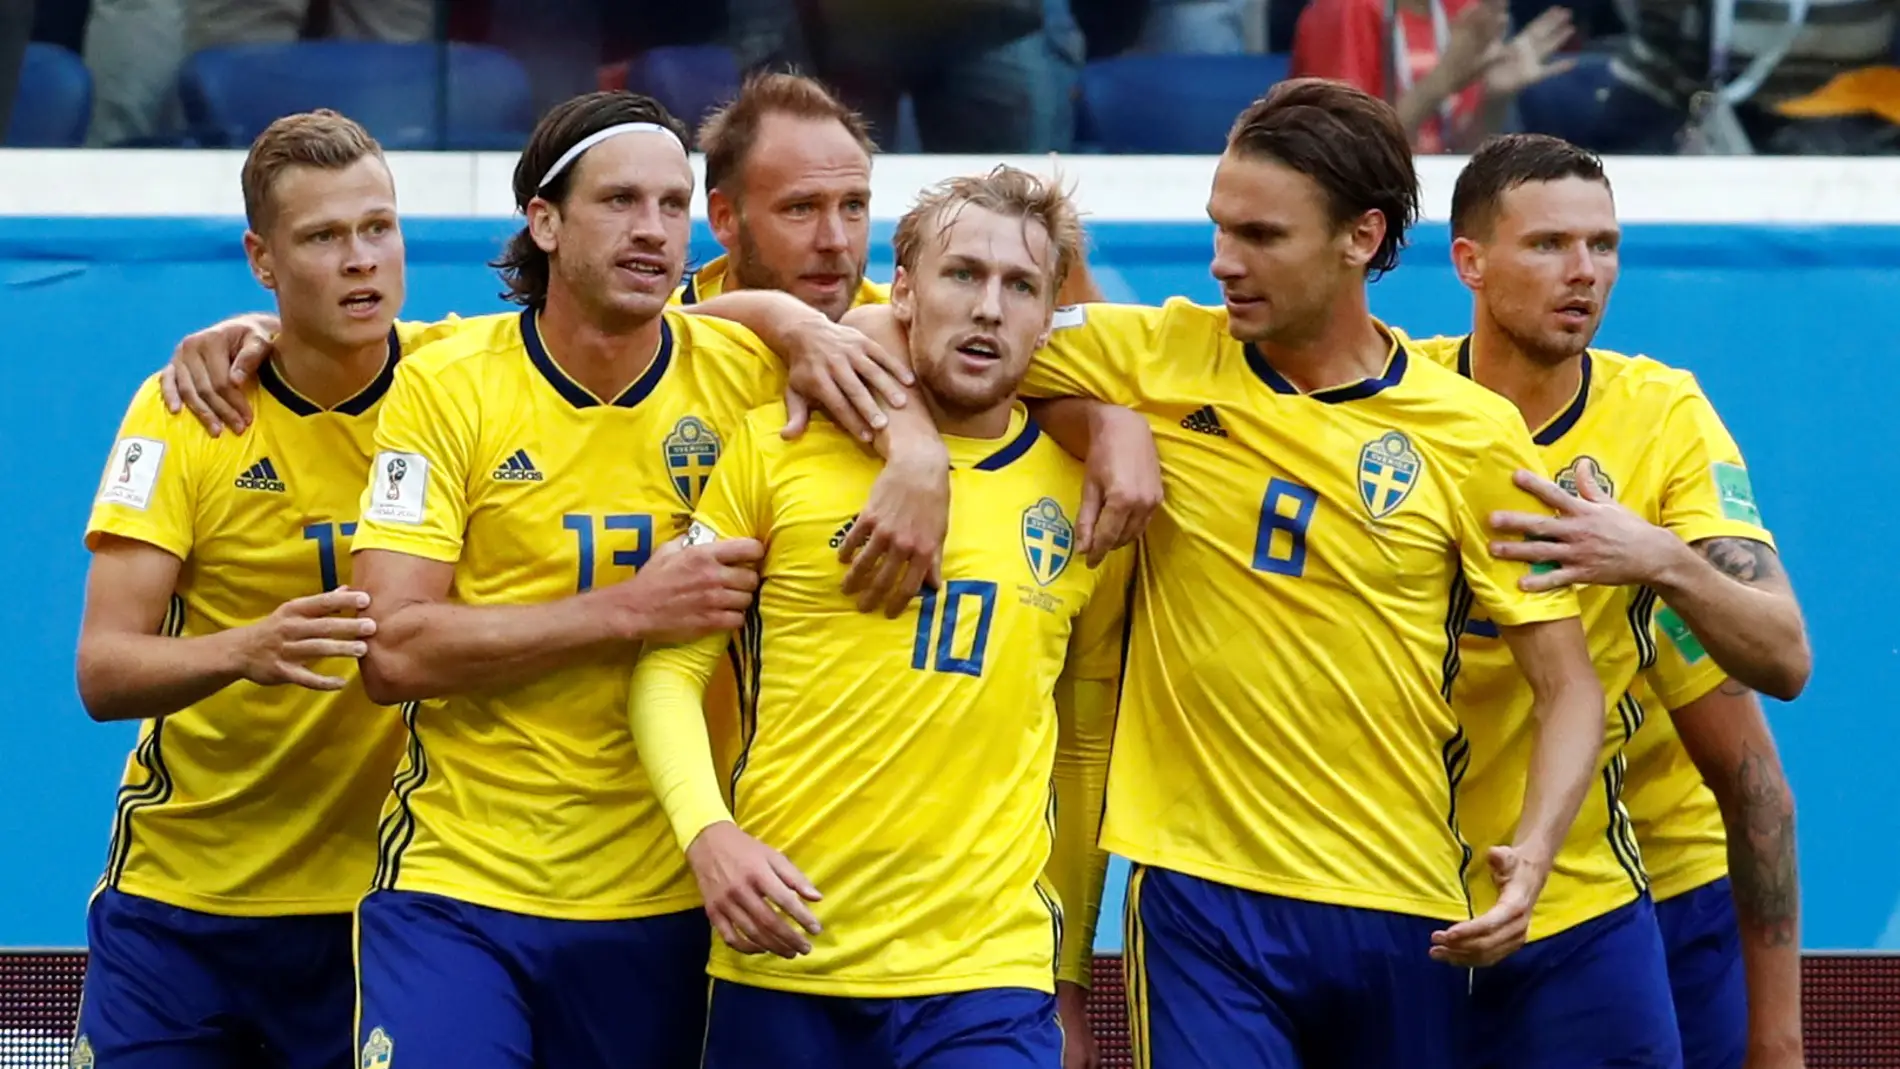 Forsberg celebra su gol con sus compañeros de Suecia